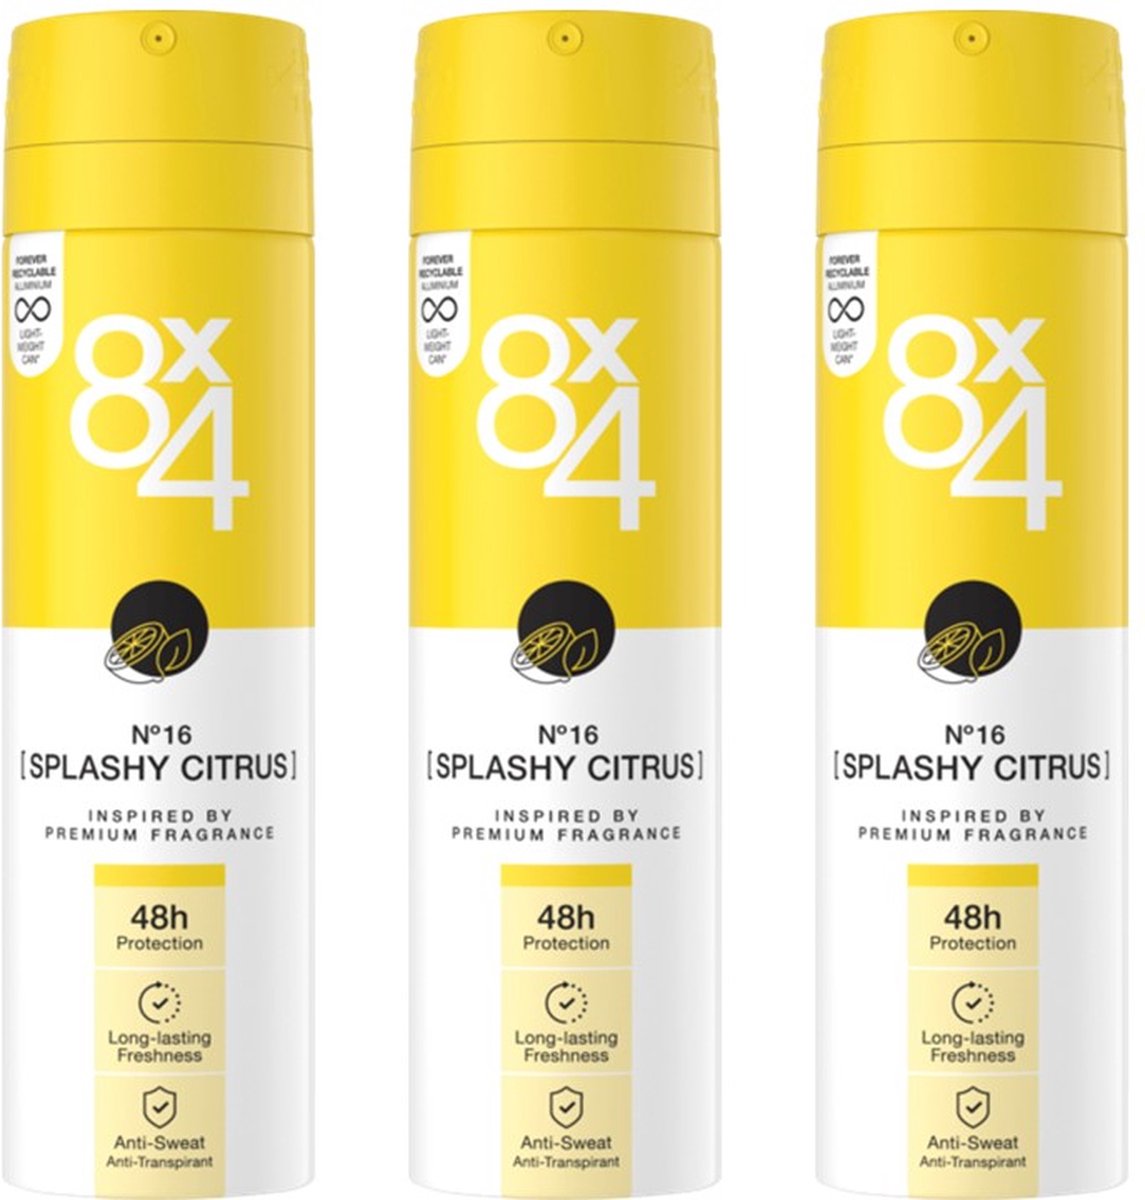 8x4 Deo Spray - No.16 Splashy Citrus - 3 x 150 Ml